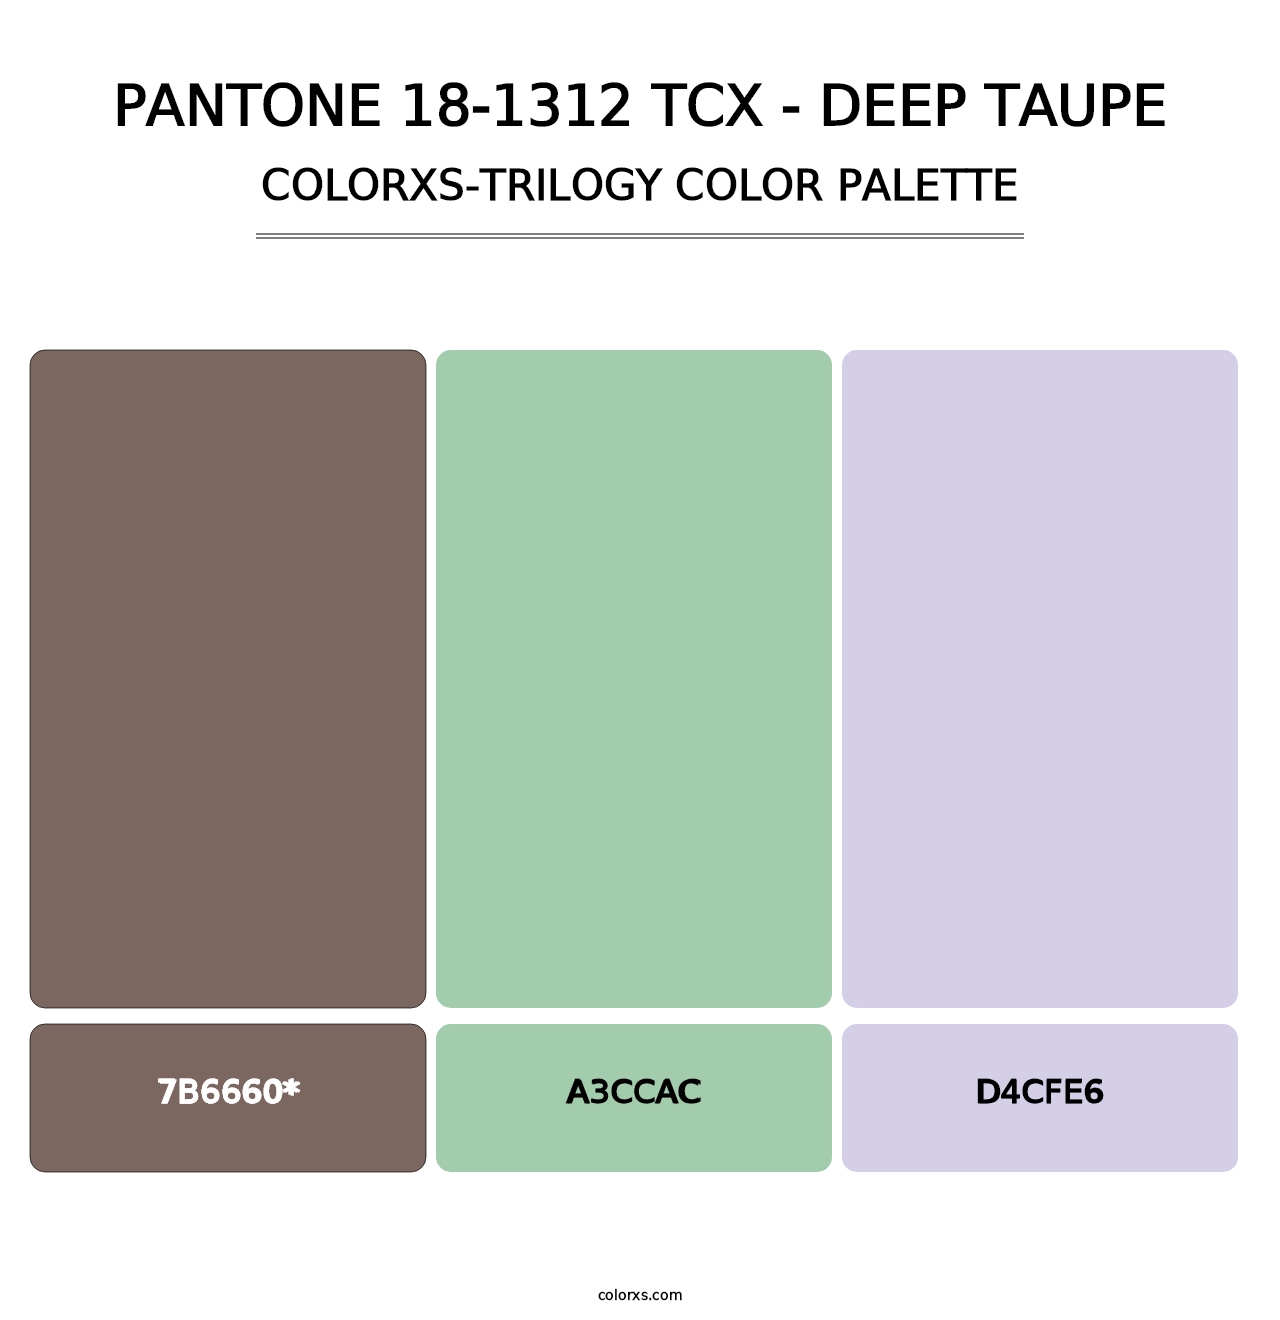 PANTONE 18-1312 TCX - Deep Taupe - Colorxs Trilogy Palette